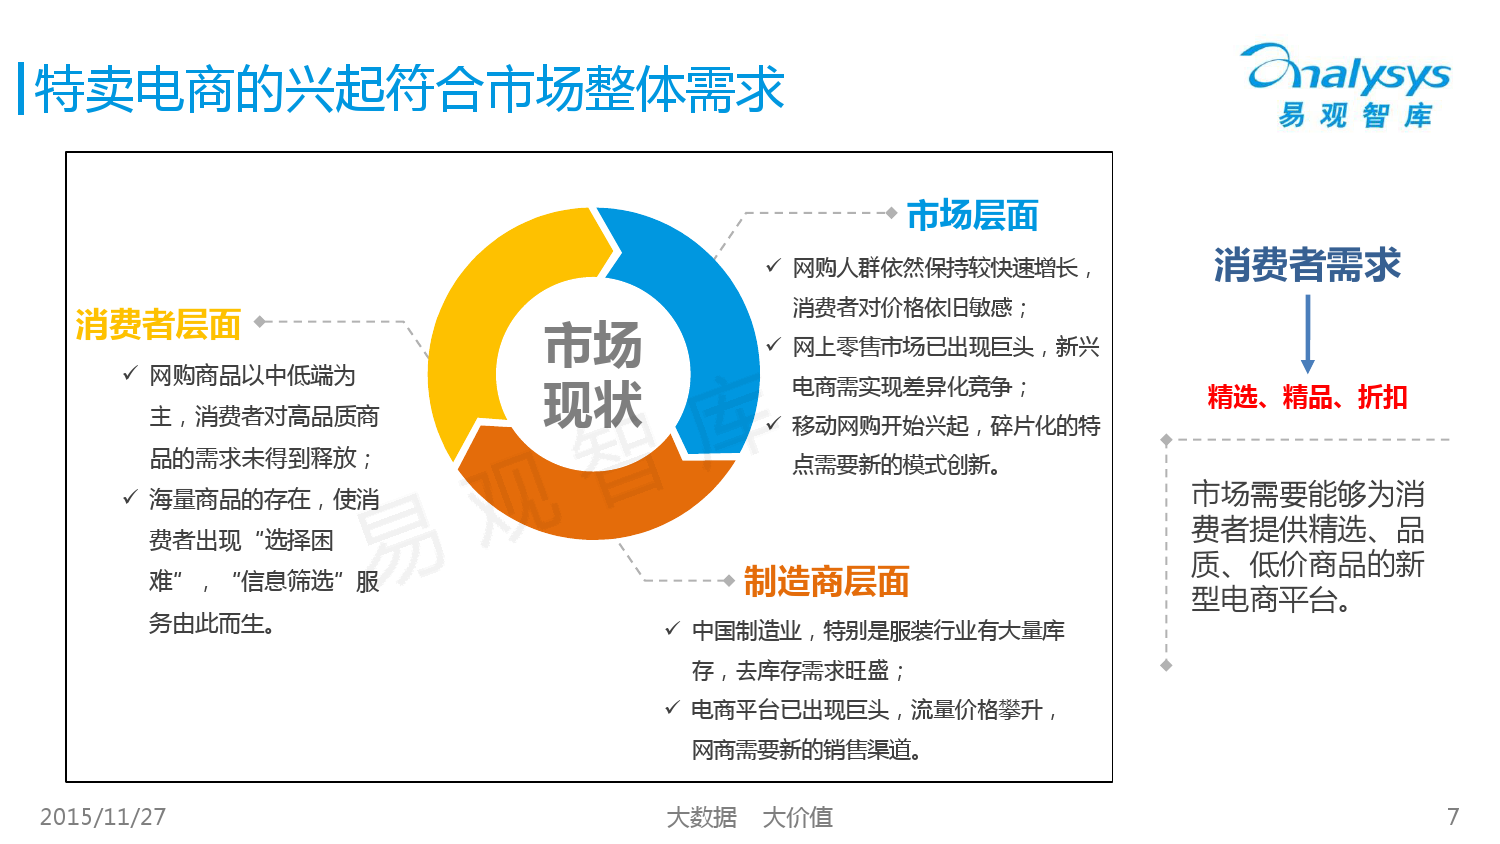 中国女性特卖电商市场专题研究报告2015 01_000007